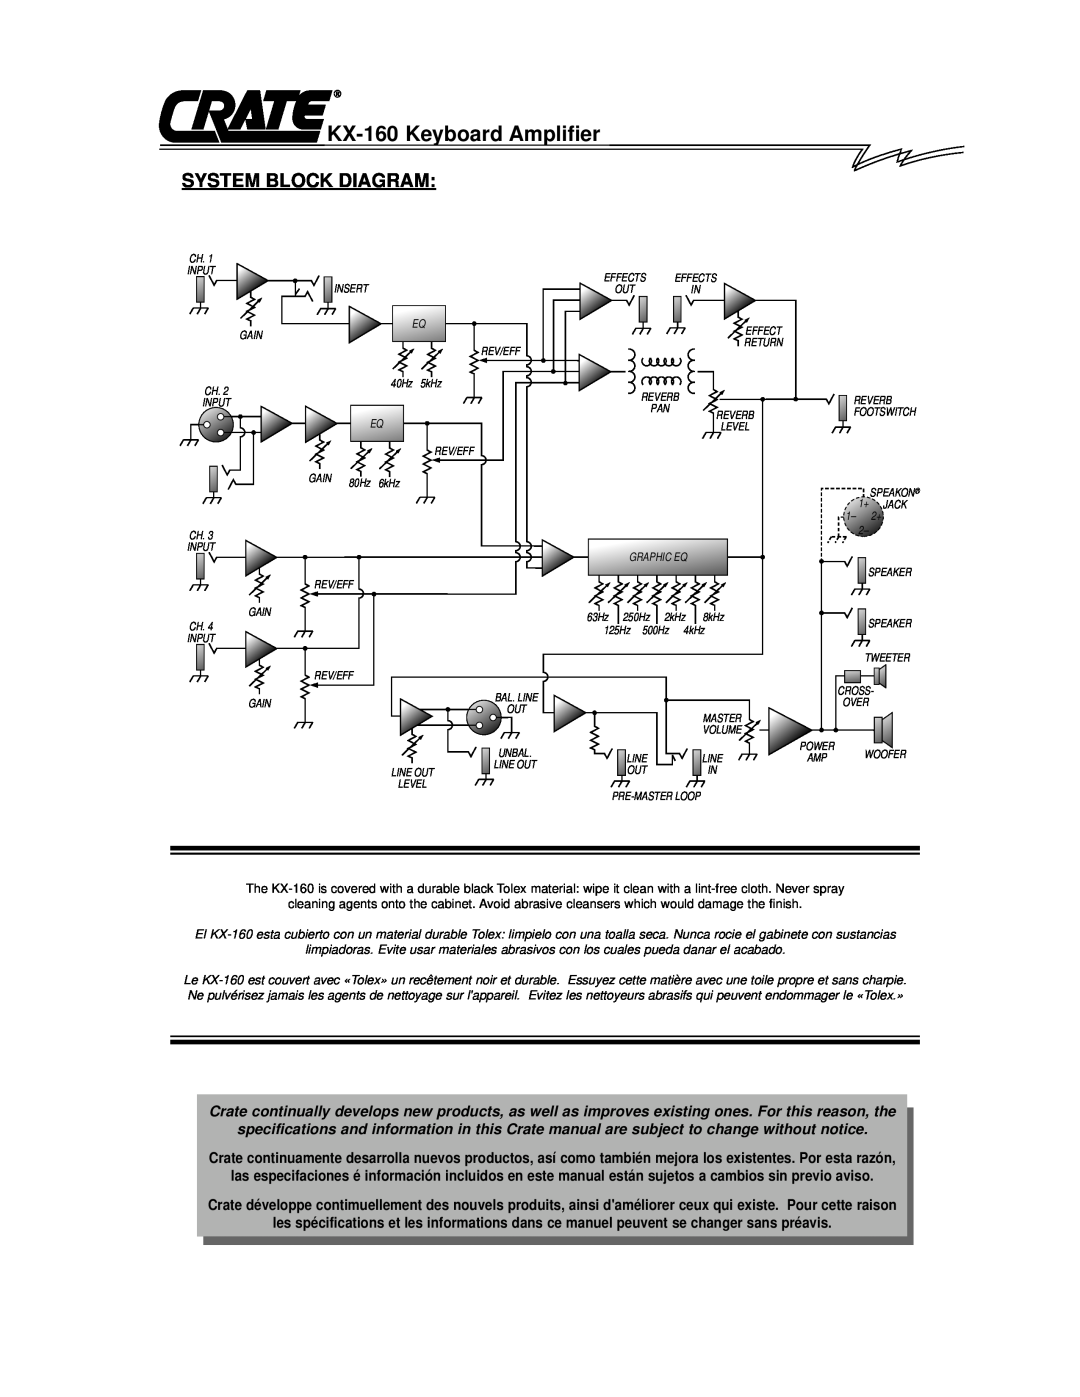 Crate Amplifiers System Block Diagram, KX-160 Keyboard Amplifier, Gain, 63Hz 250Hz, 125Hz 500Hz 4kHz, SPEAKON 1+ JACK 